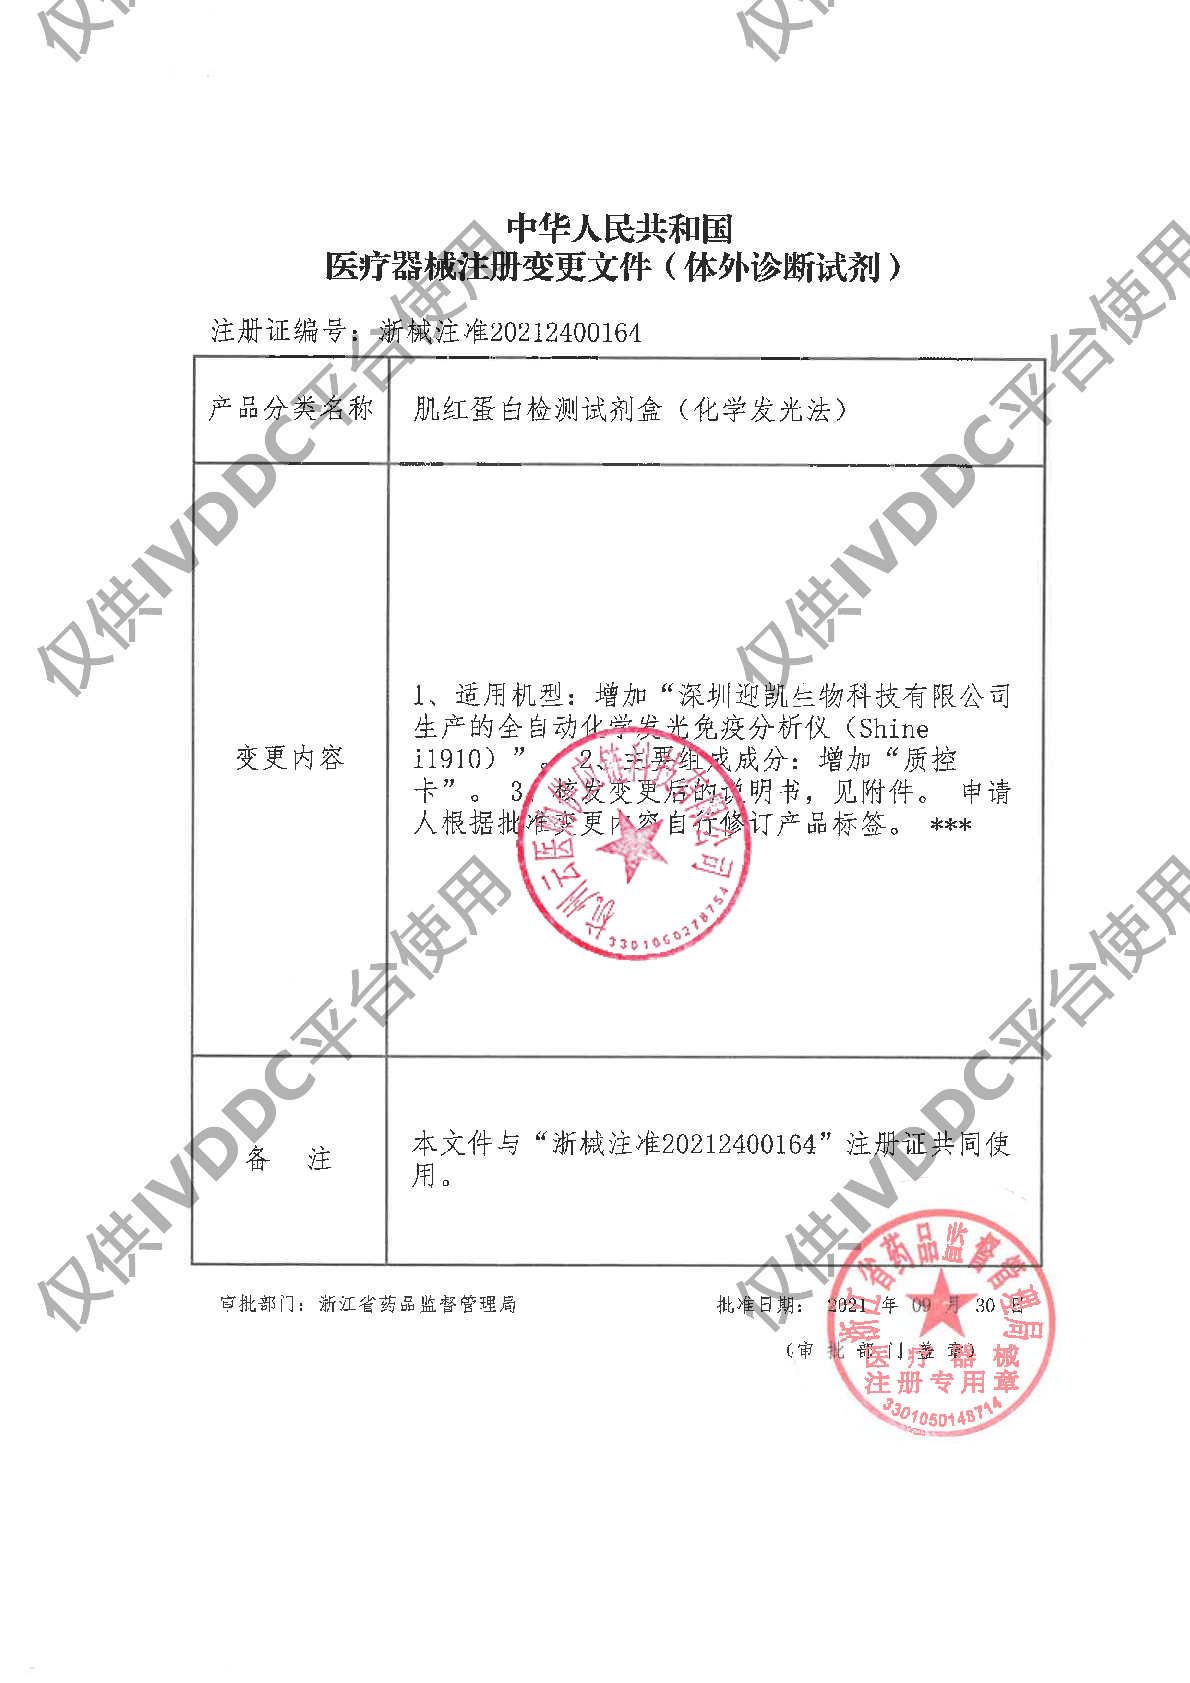 【宁波奥丞】肌红蛋白检测试剂盒(化学发光法)注册证